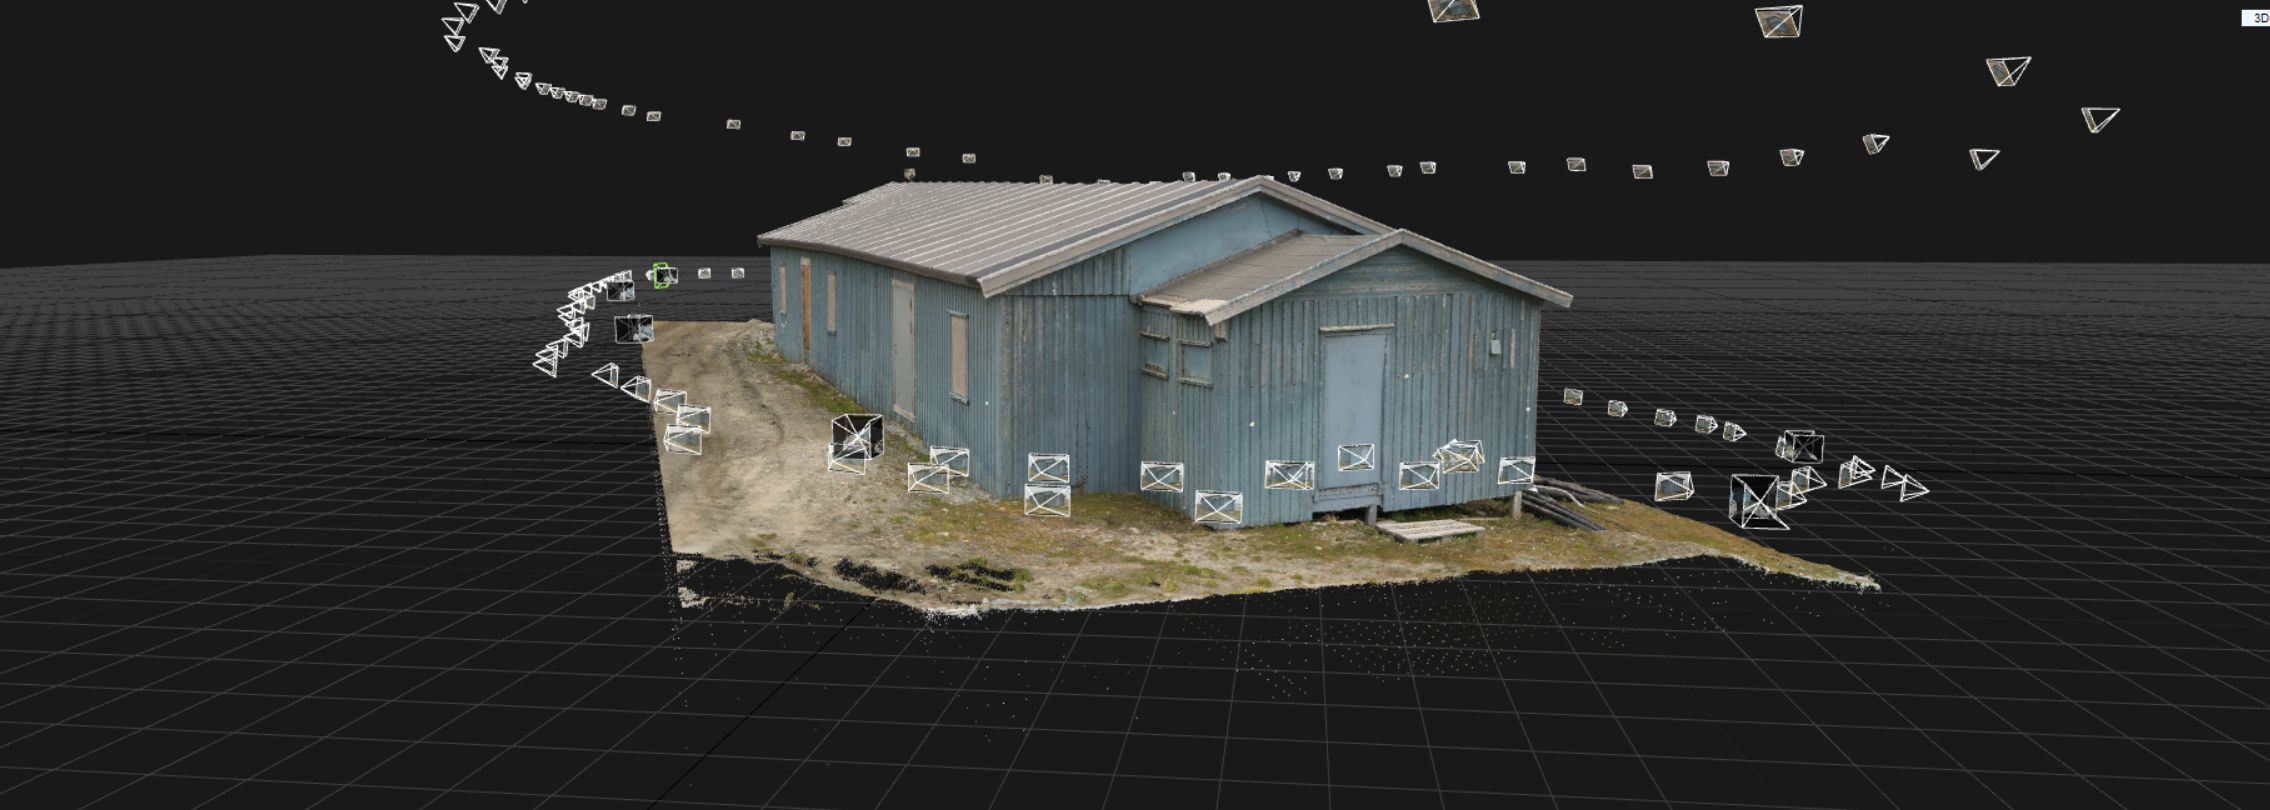 Dataprosessering av byninger i Svea, Svalbard. Modell Erich Nau.